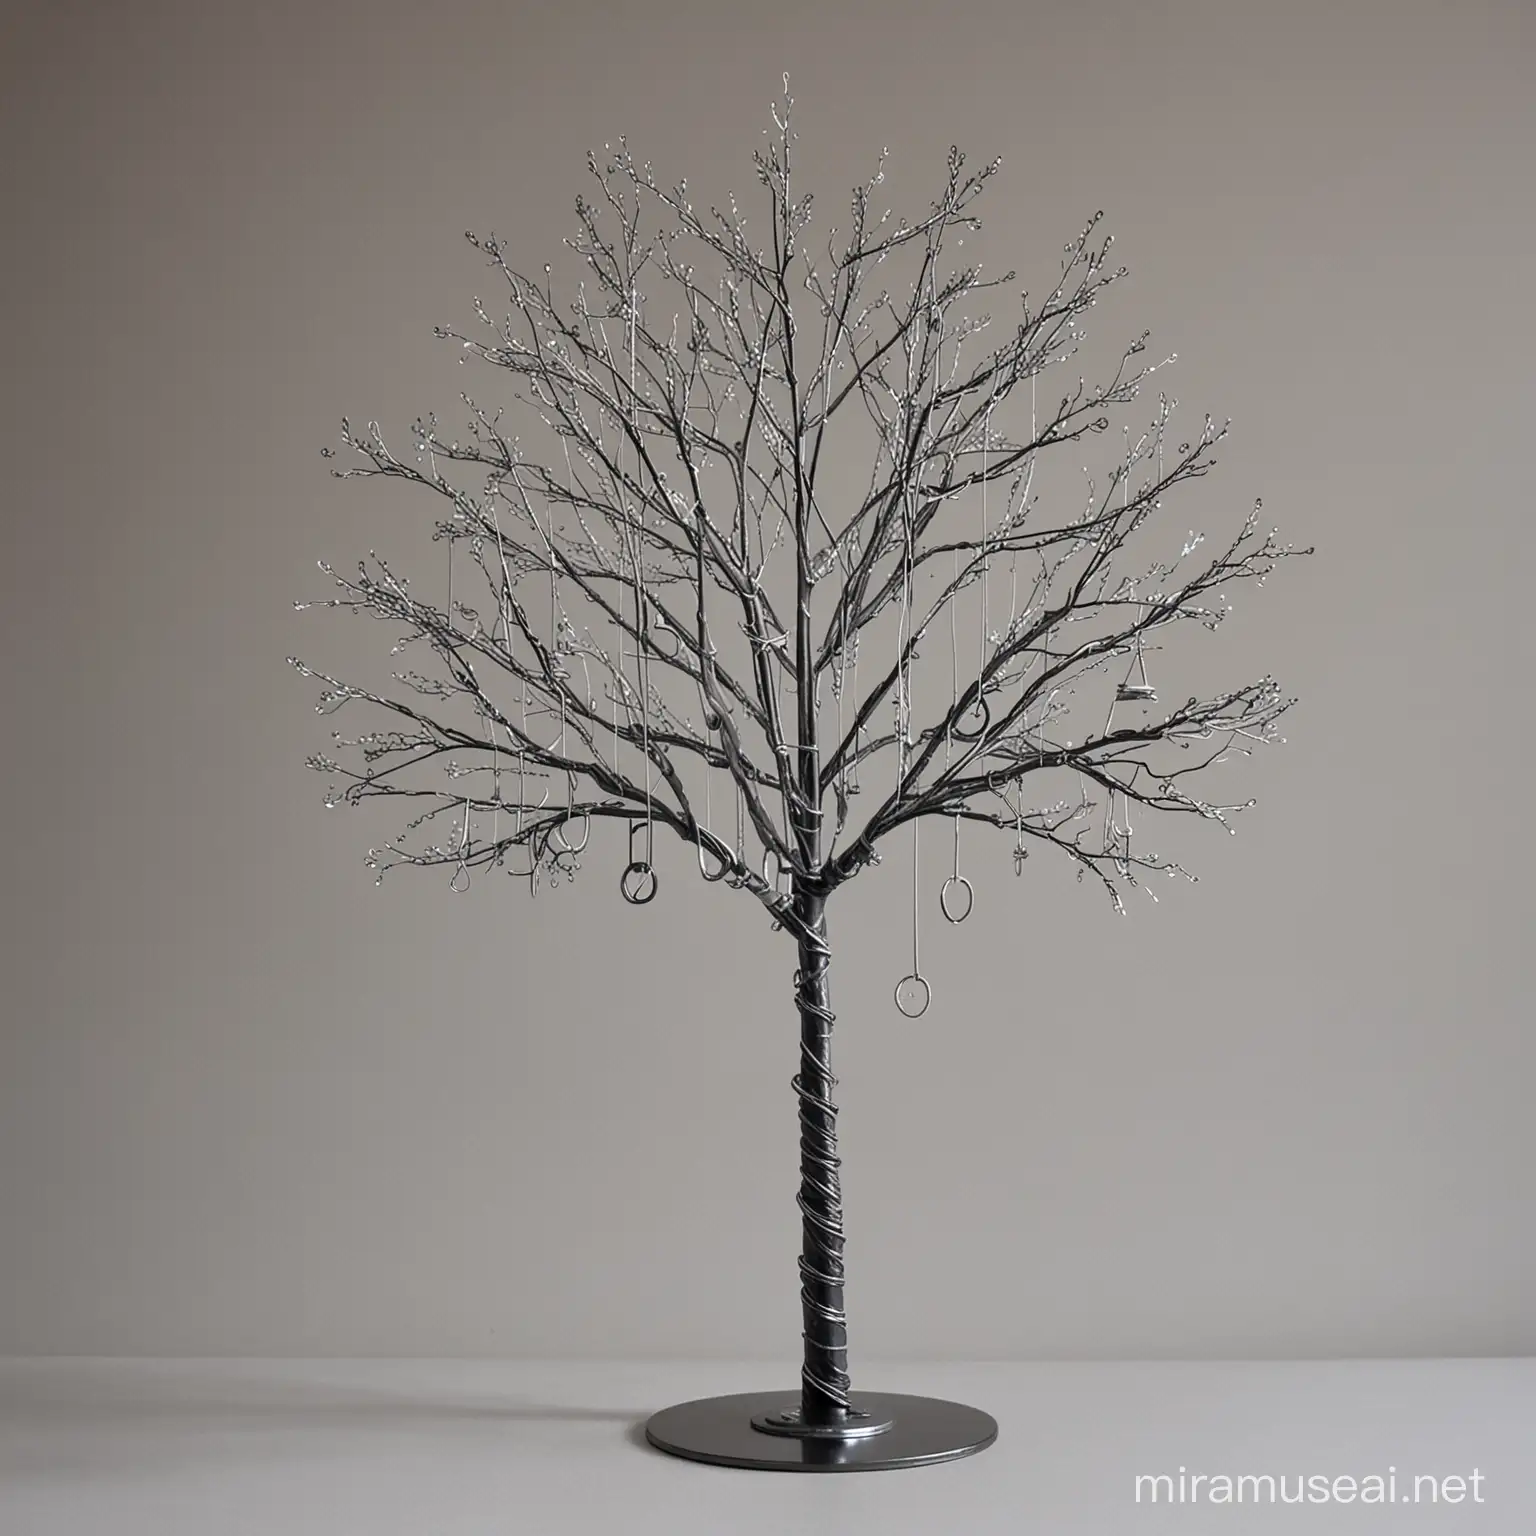 albero metallico con appesi alberi di trasmissione
